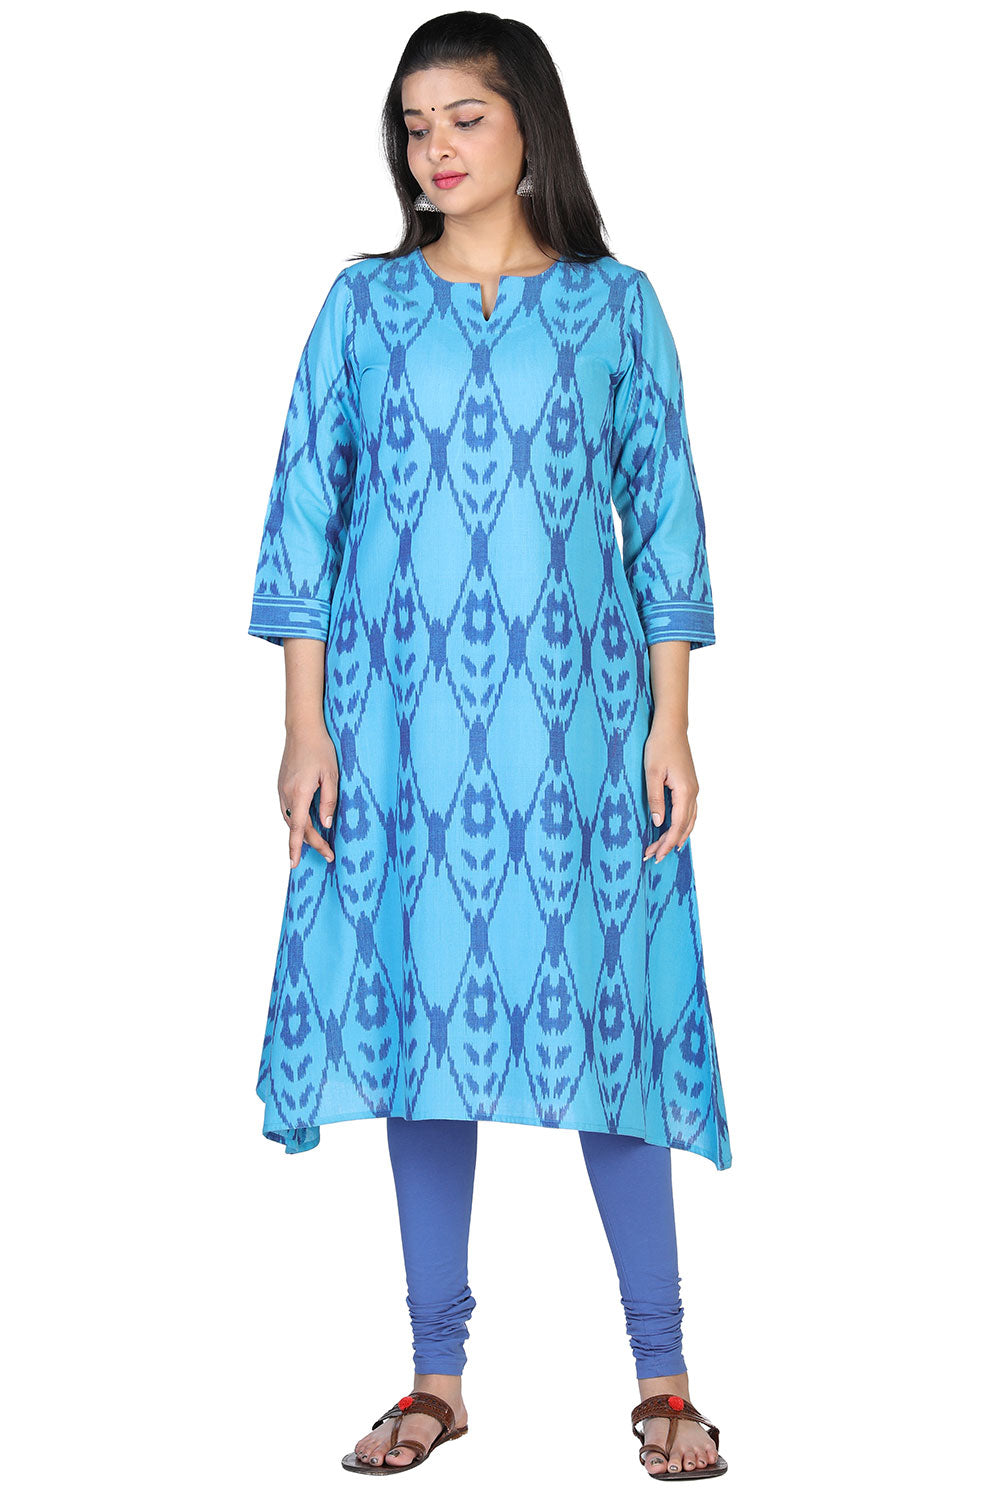 Turquoise blue cotton ikkat kurti